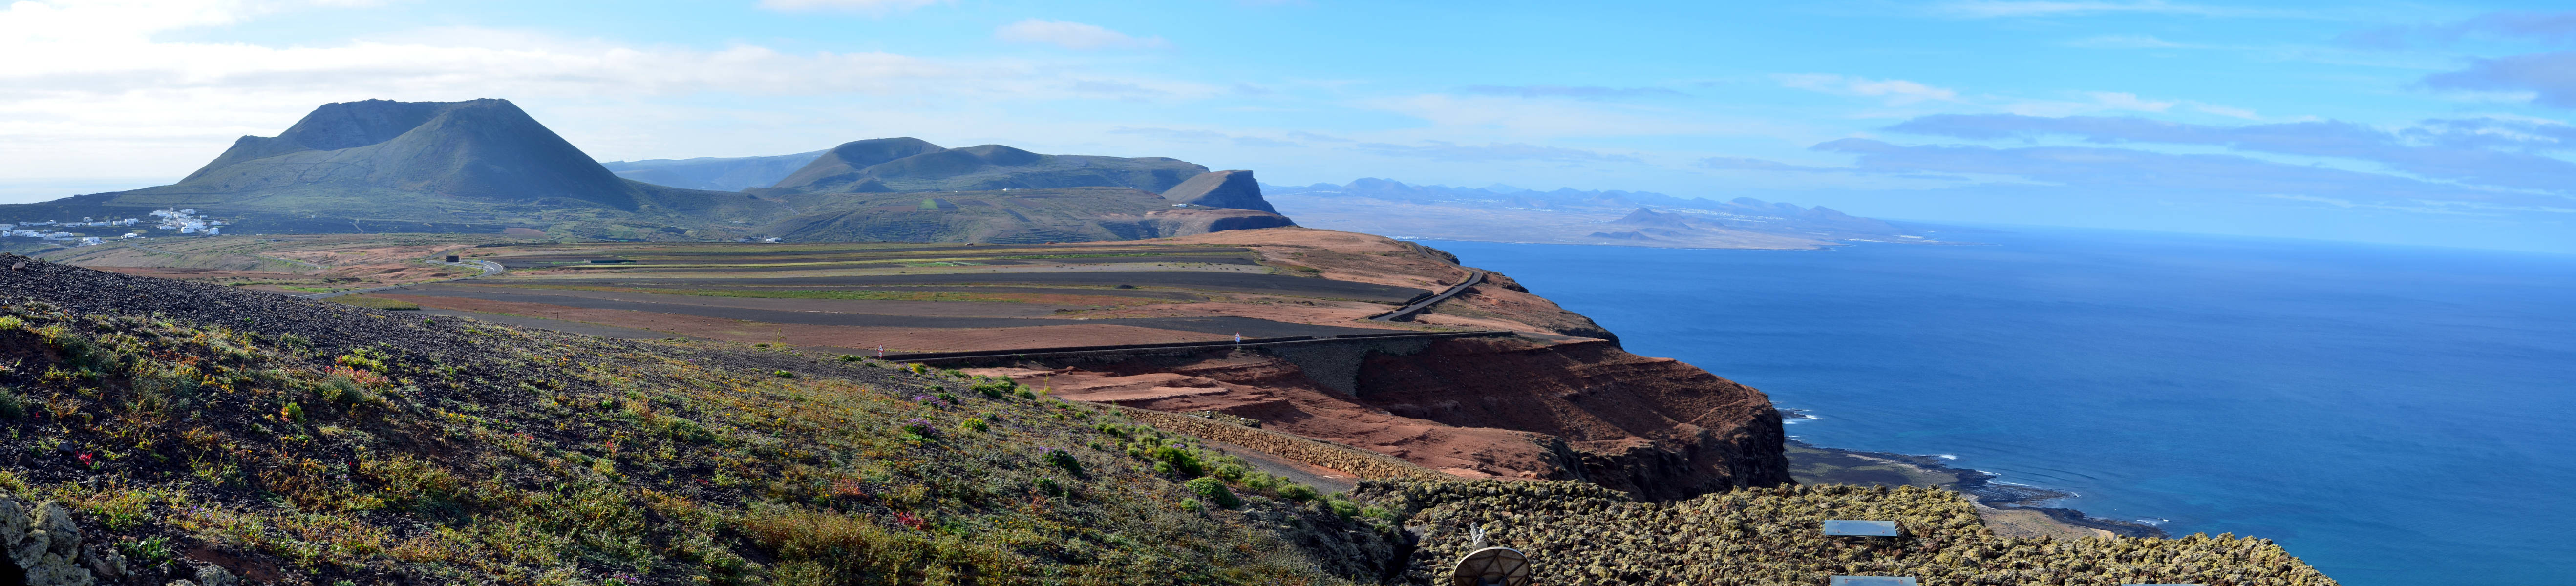 Mirador del Rio - Lanzarote - Canary Islands.jpg